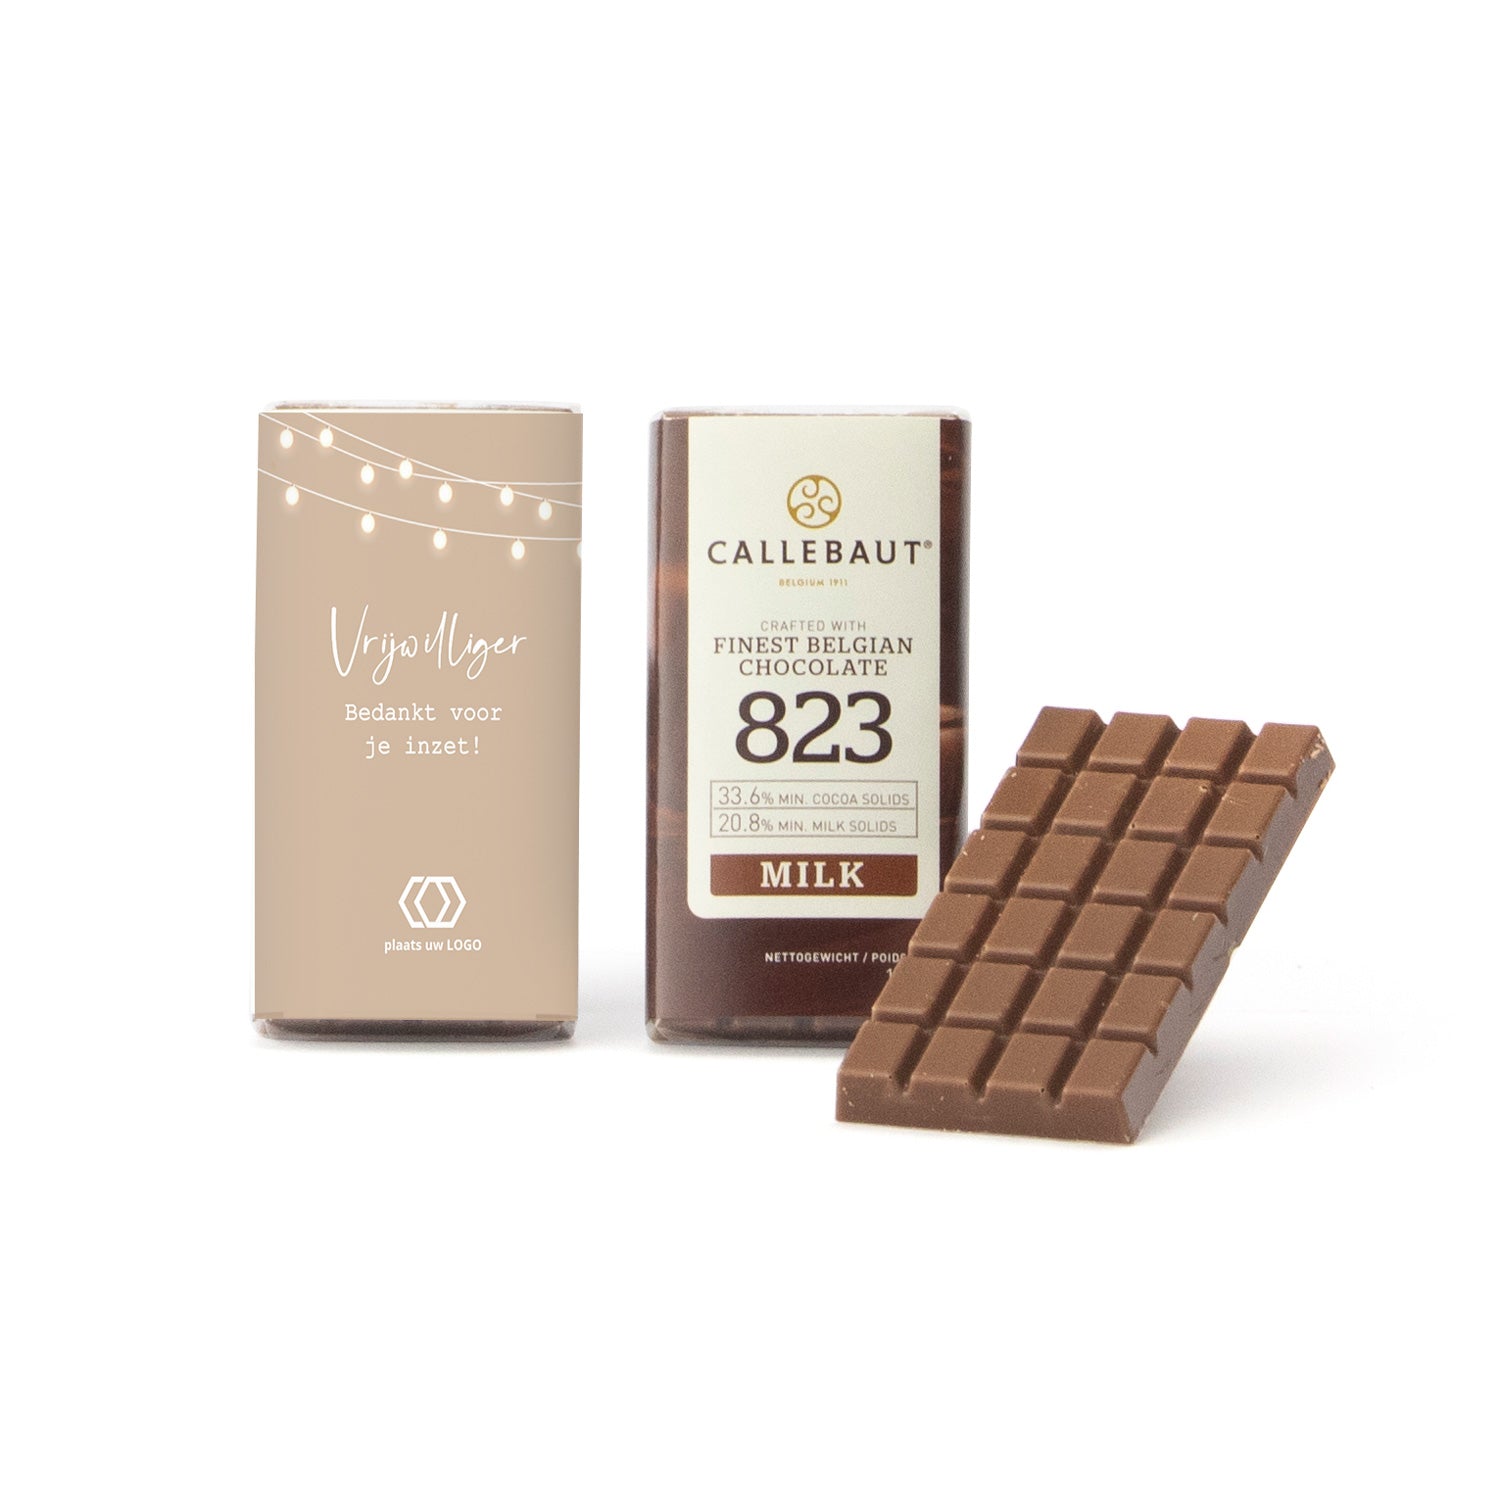 Callebaut chocolaatjes (25 stuks) - Vrijwilliger - Bedankjes.nl